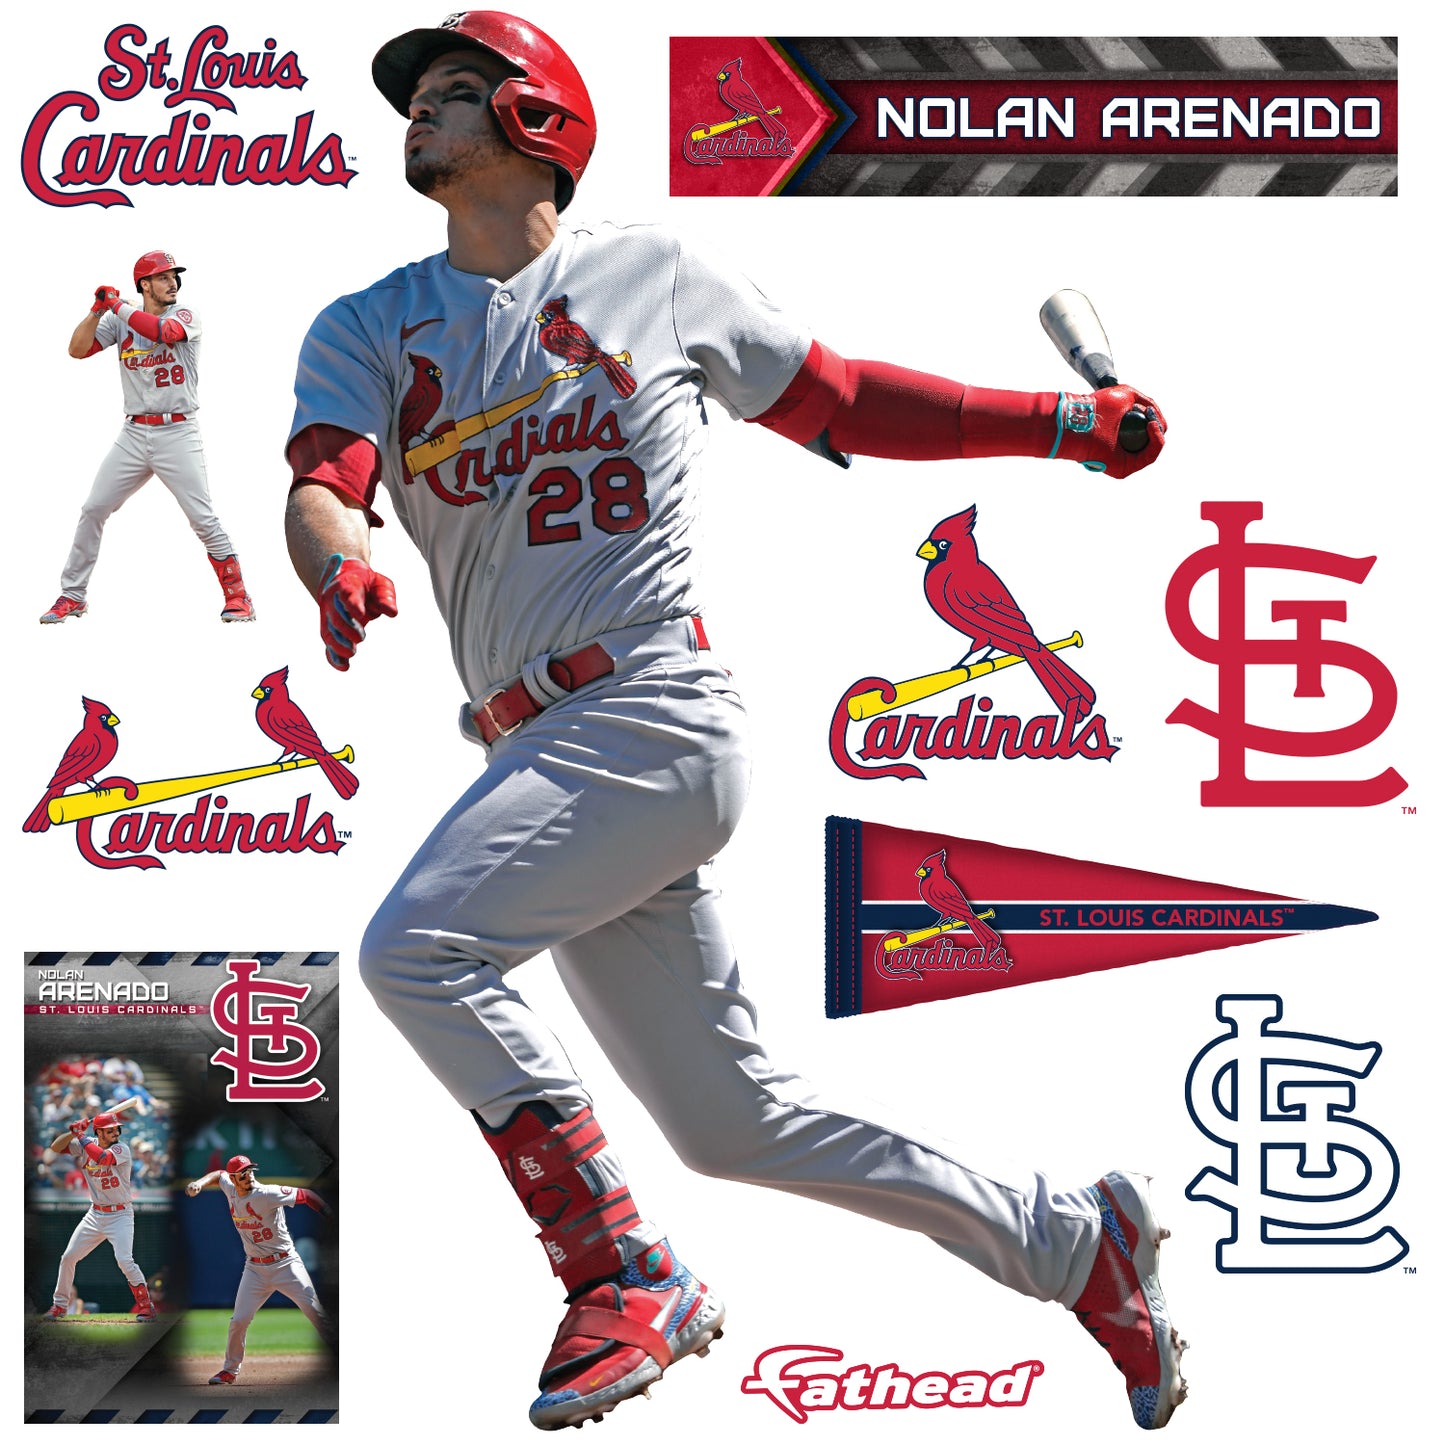 nolan arenado cardinals wallpaper